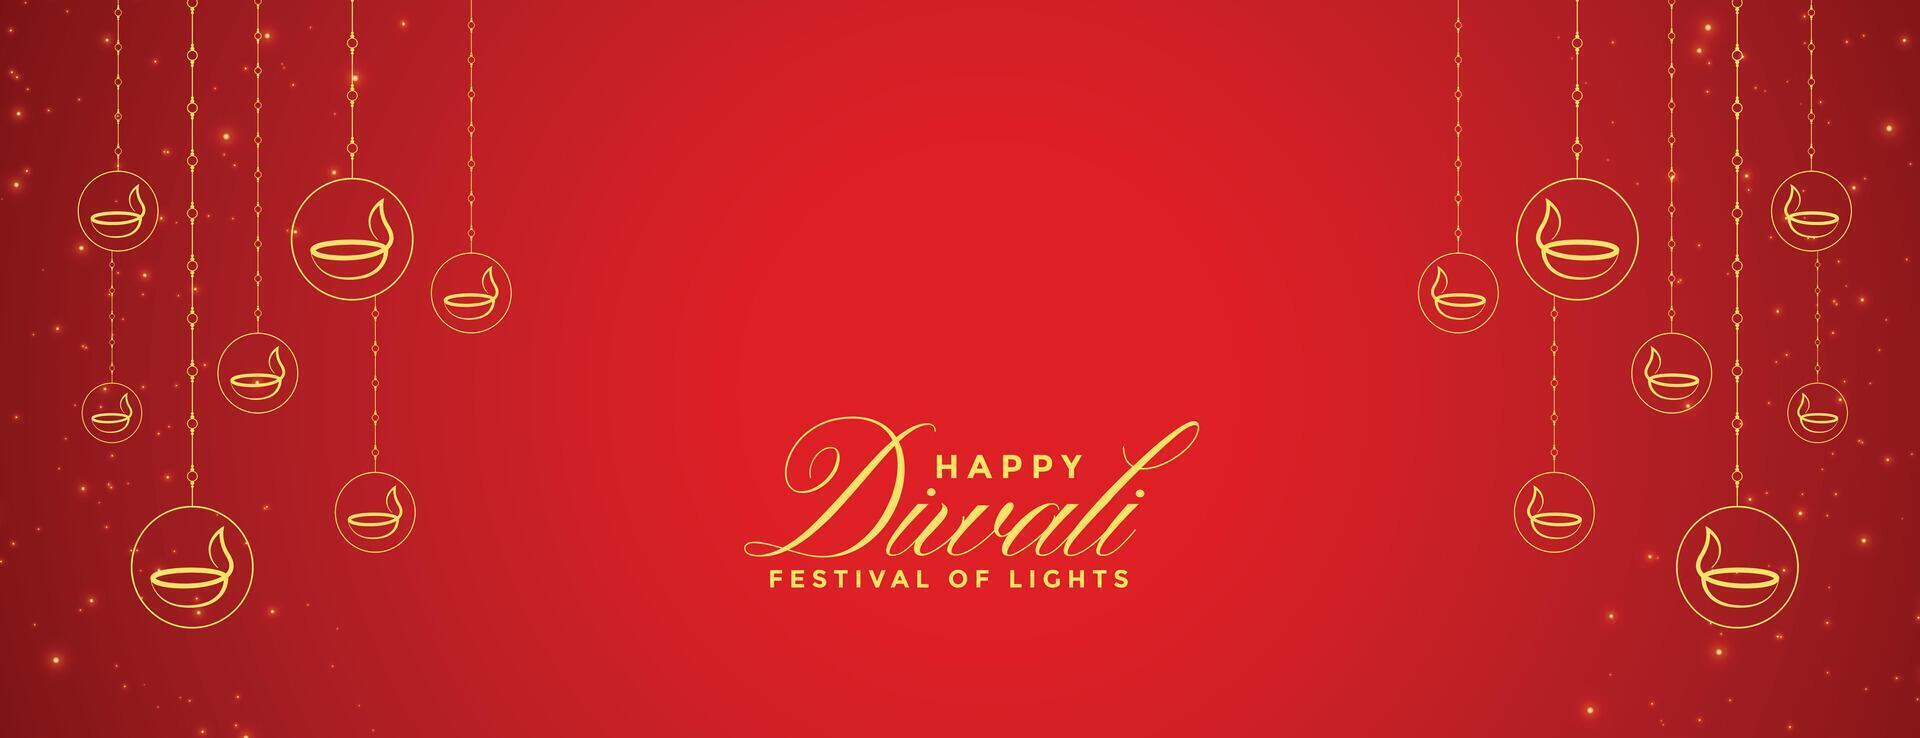 feliz diwali vermelho bandeira com diya decoração vetor